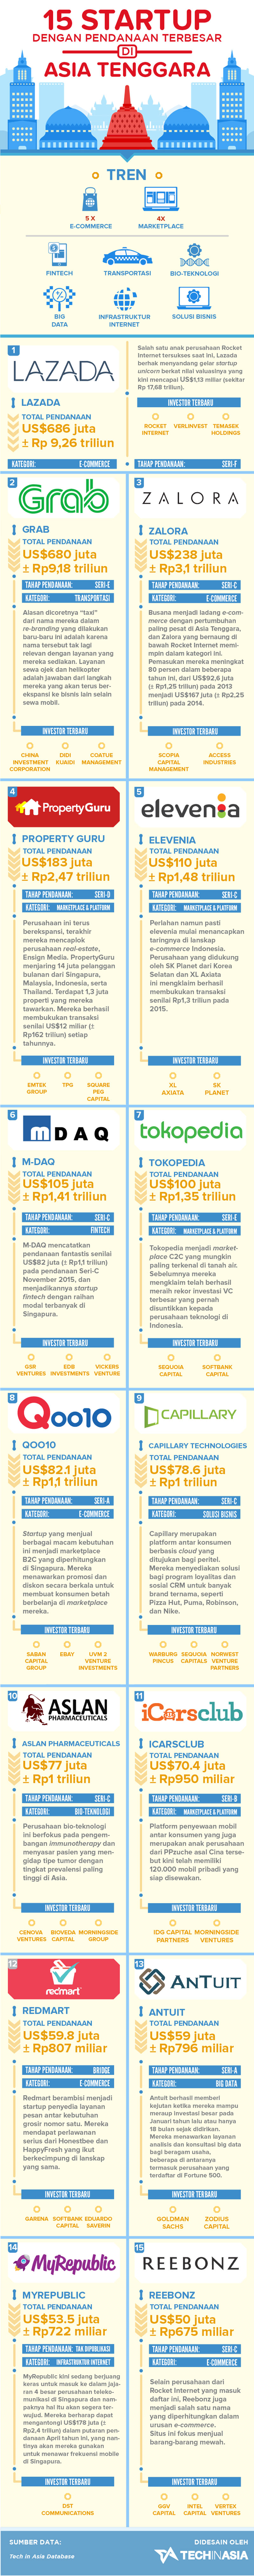 infografis-15-Startup-di-Asia-Tenggara-dengan-Pendanaan-Terbesar-revisi